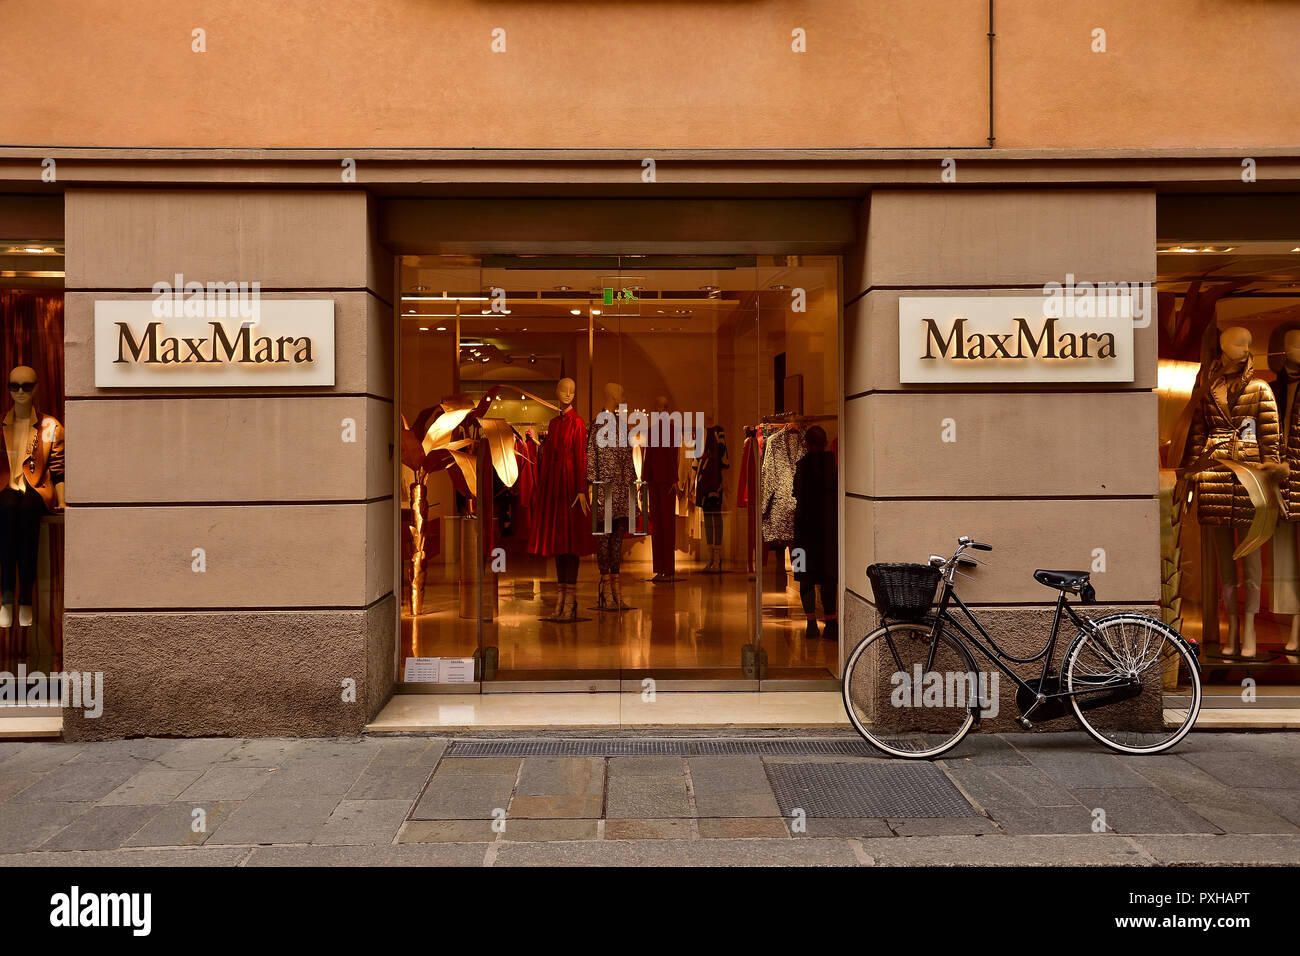 Max Mara store in Reggio Emilia, Italy Stock Photo - Alamy